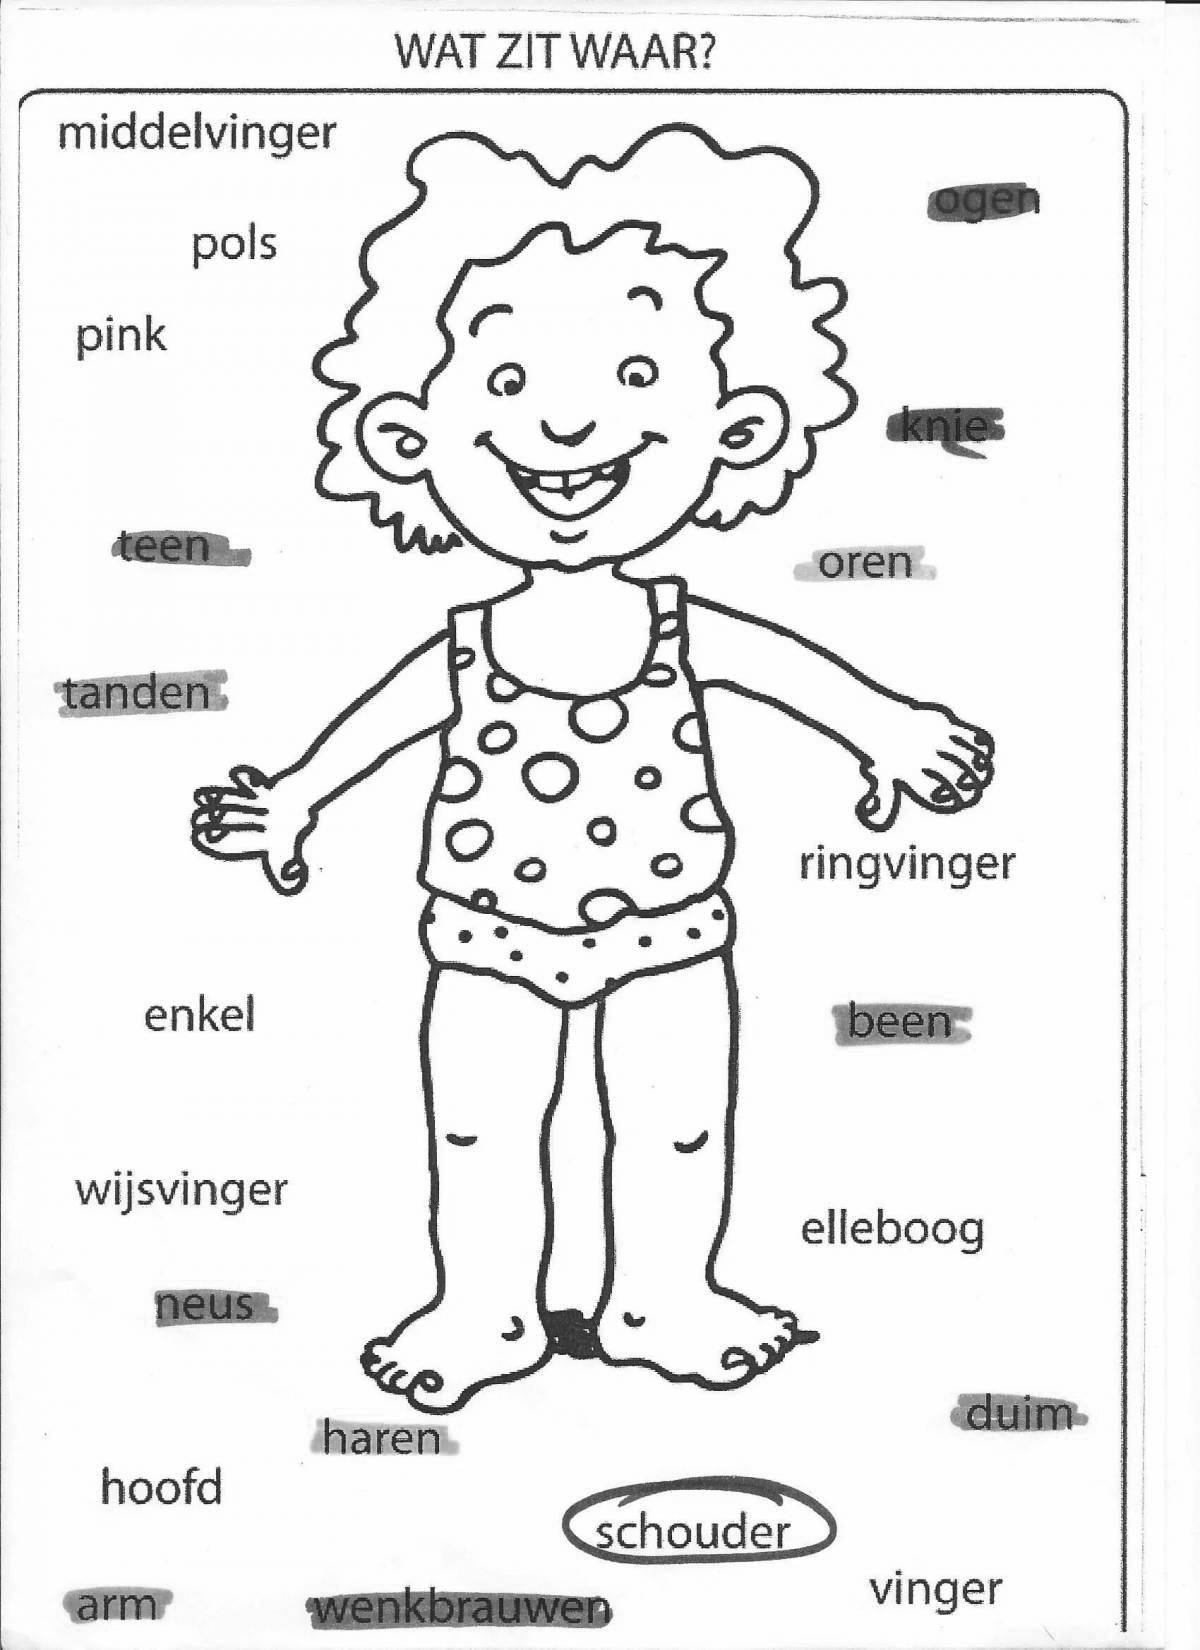 Части тела на английском для детей #12